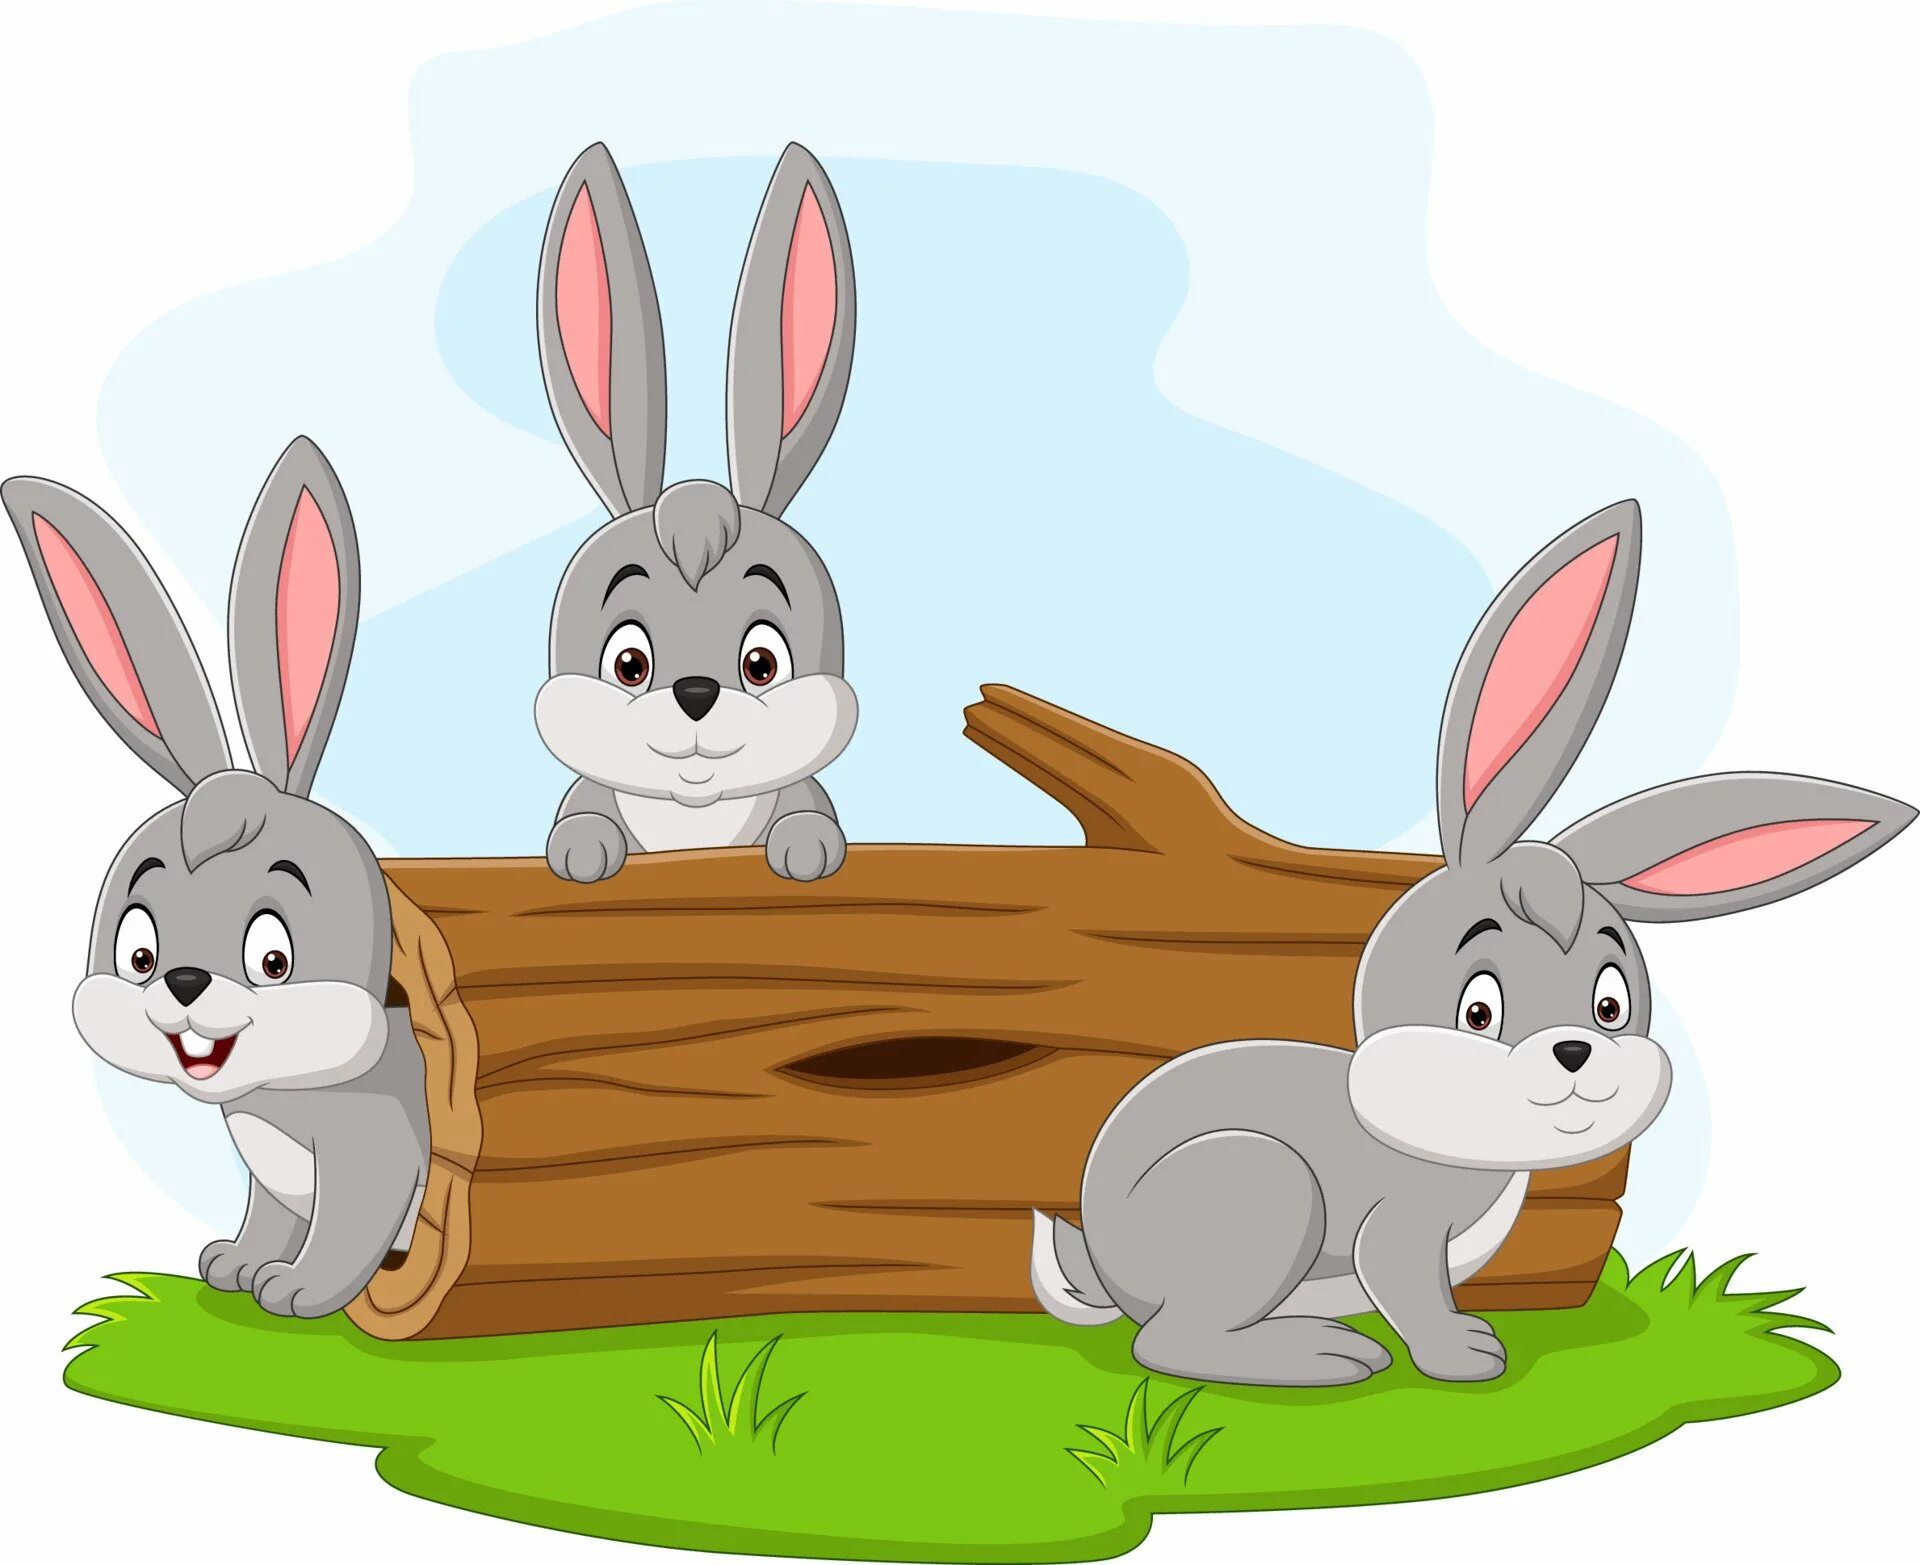 3 веселых зайца. Зайцы на бревне. Два зайца. Зайцы пилят бревно. Ребенок с зайкой сидите.